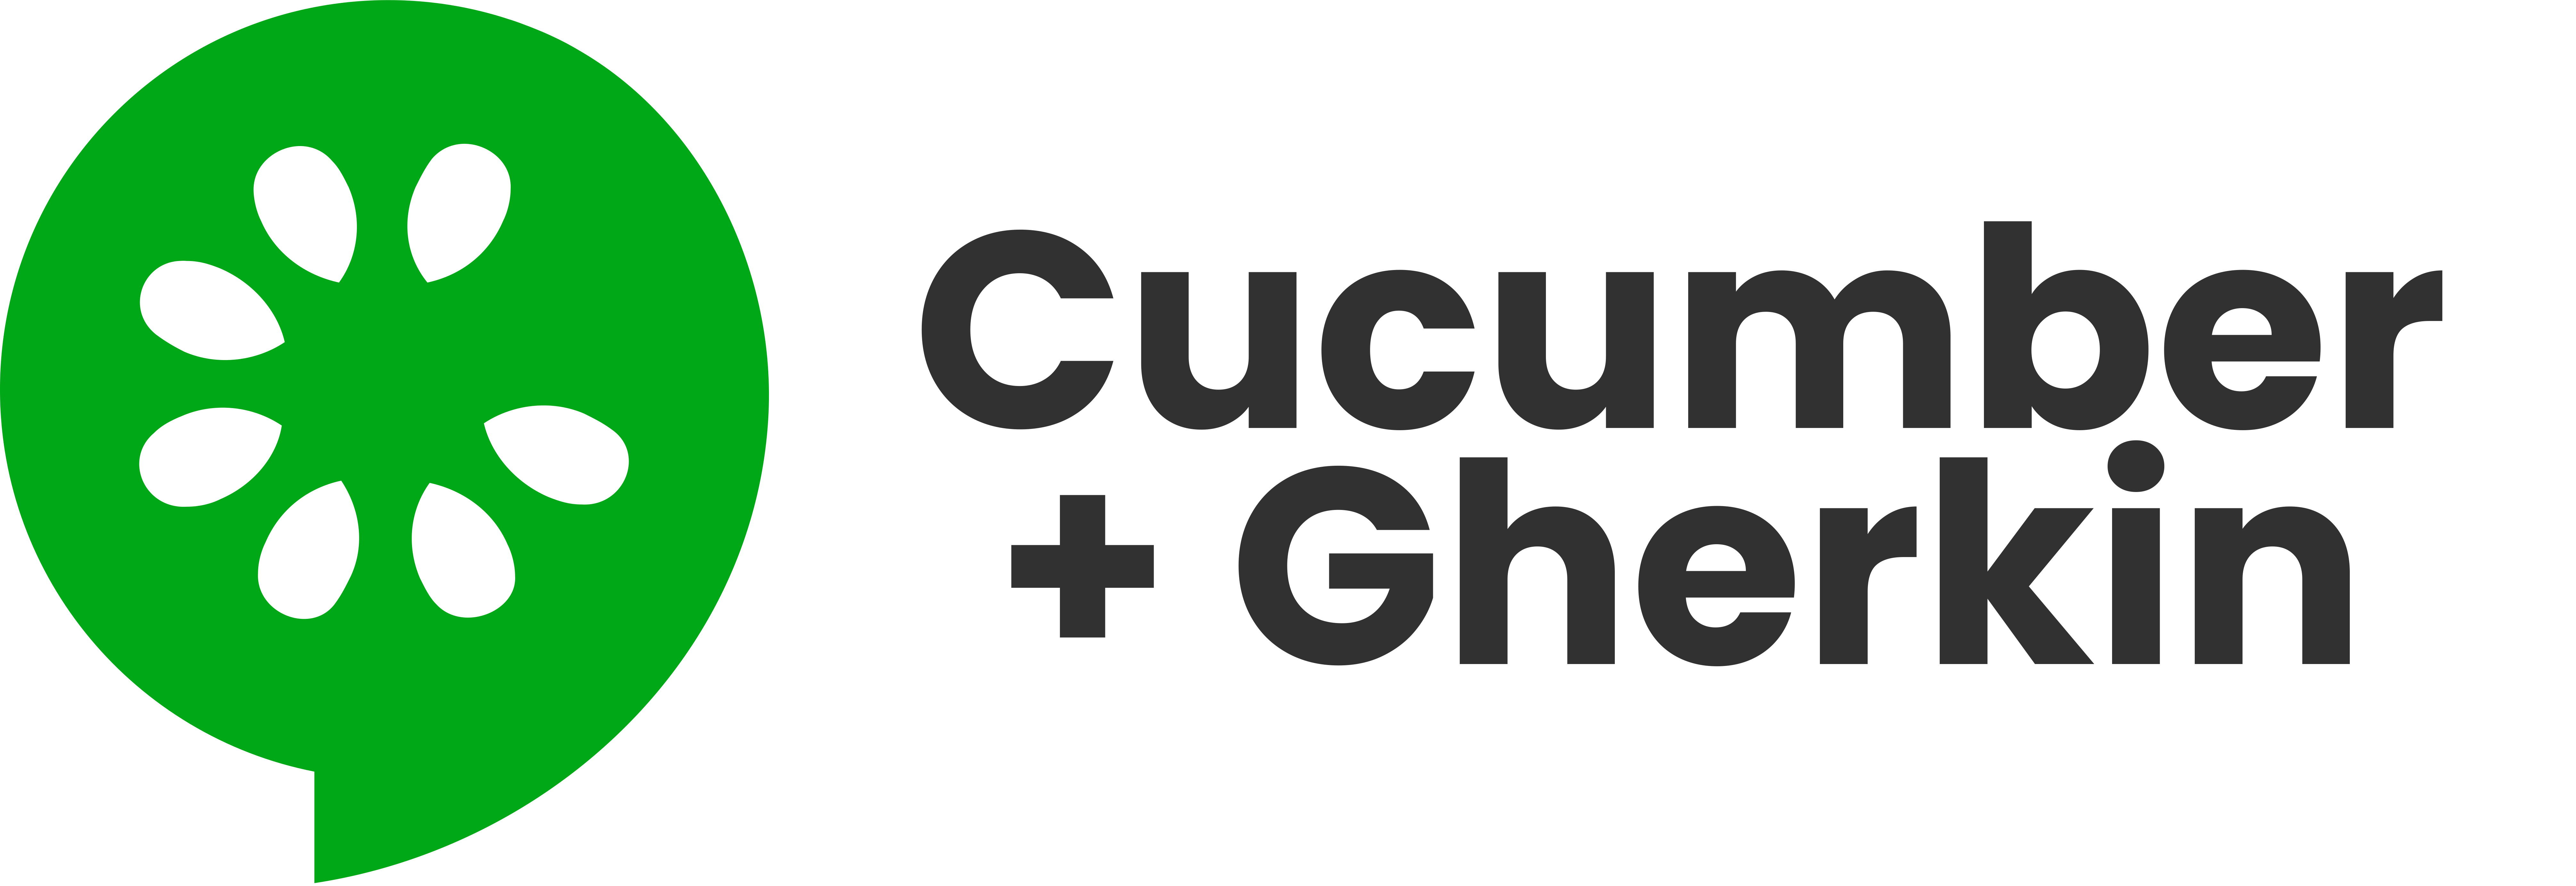 Cucumber C logo